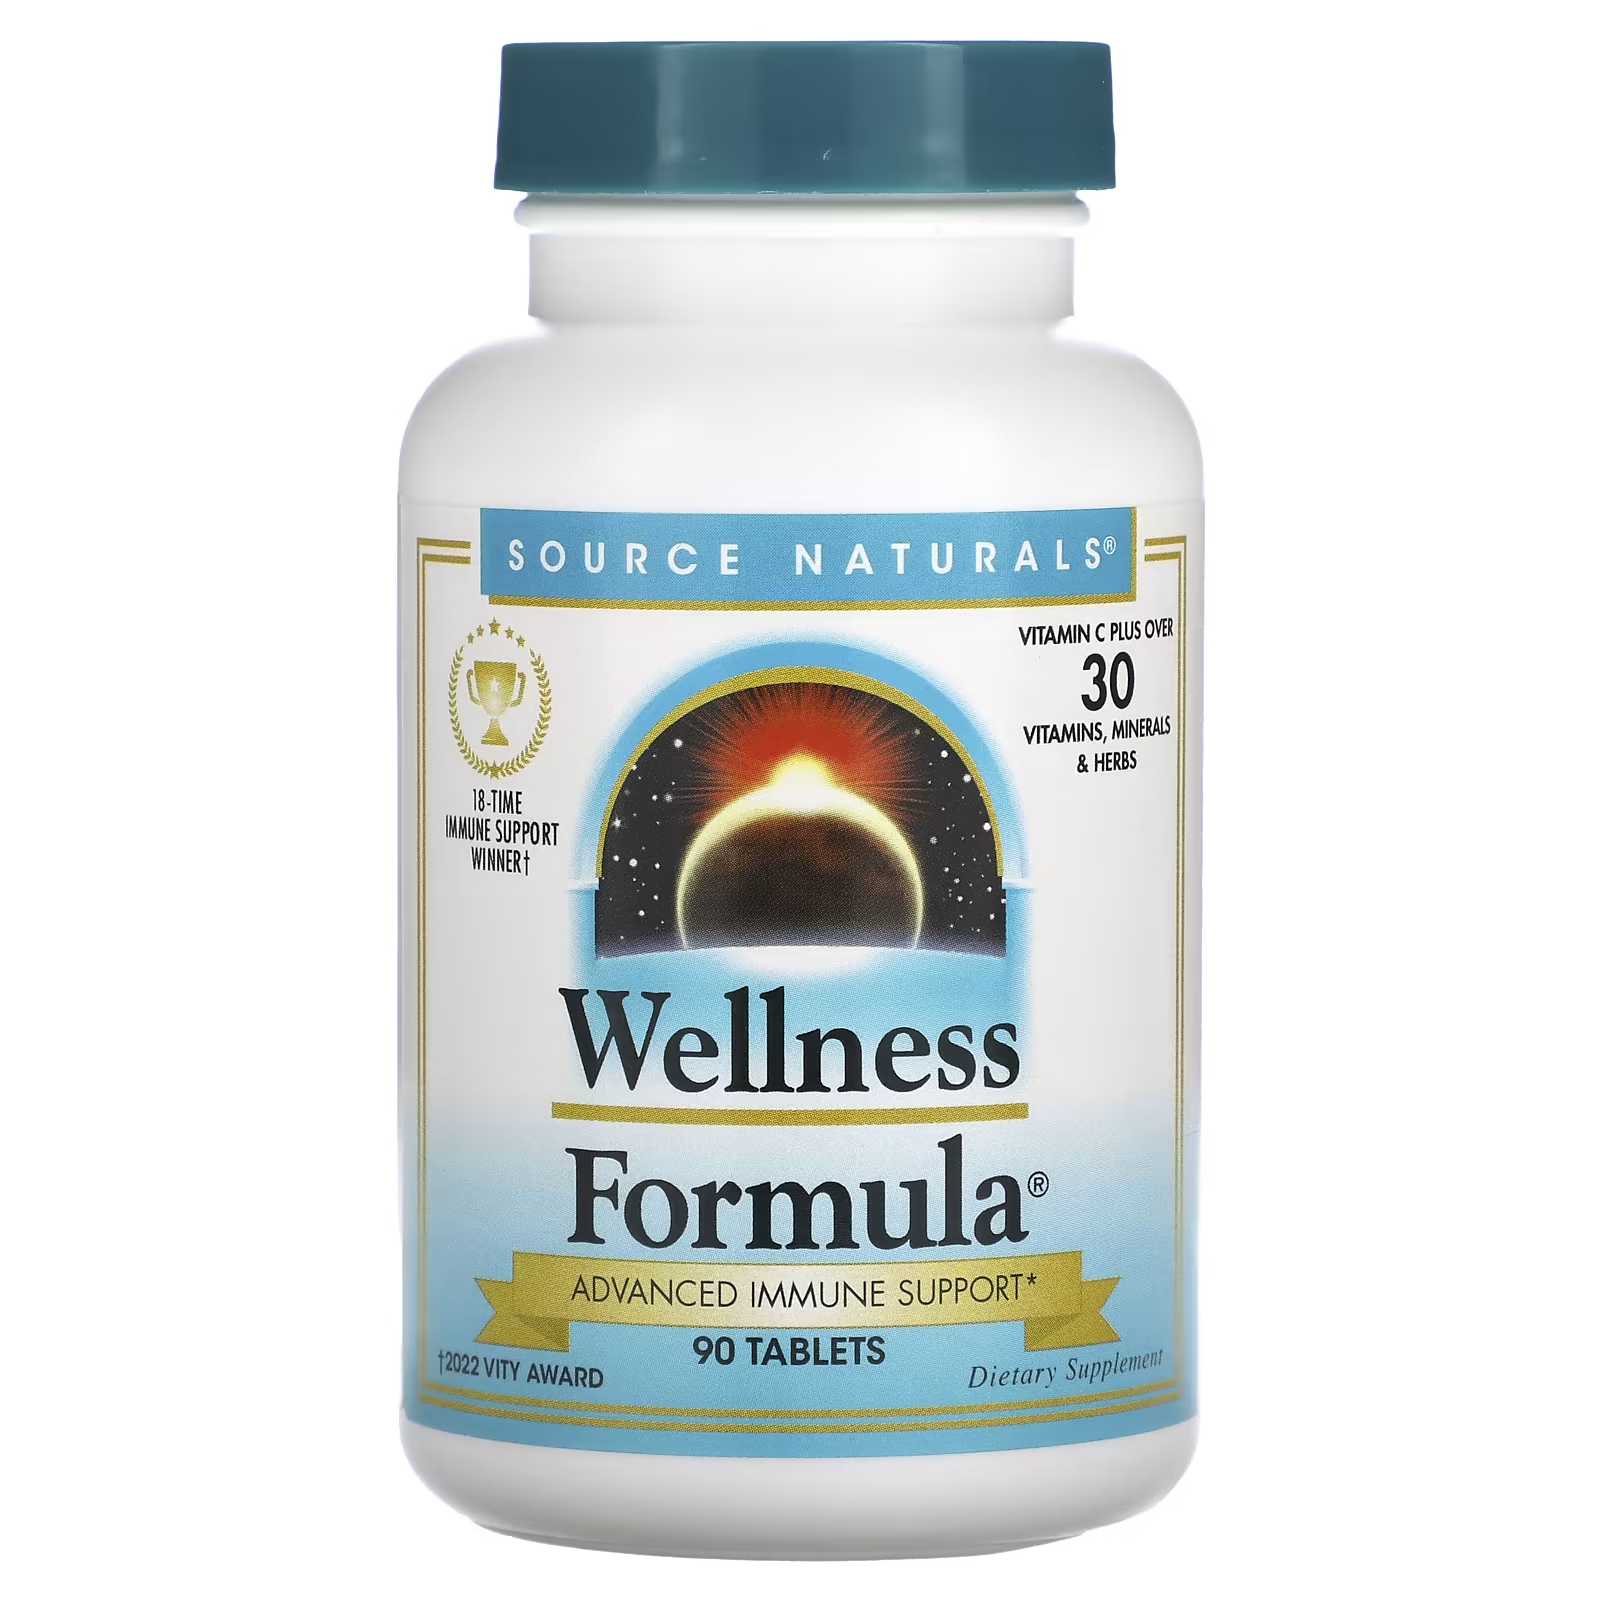 Source Naturals Wellness Formula Advanced Immune Support 90 таблеток source naturals wellness formula улучшенная поддержка иммунитета 180 таблеток